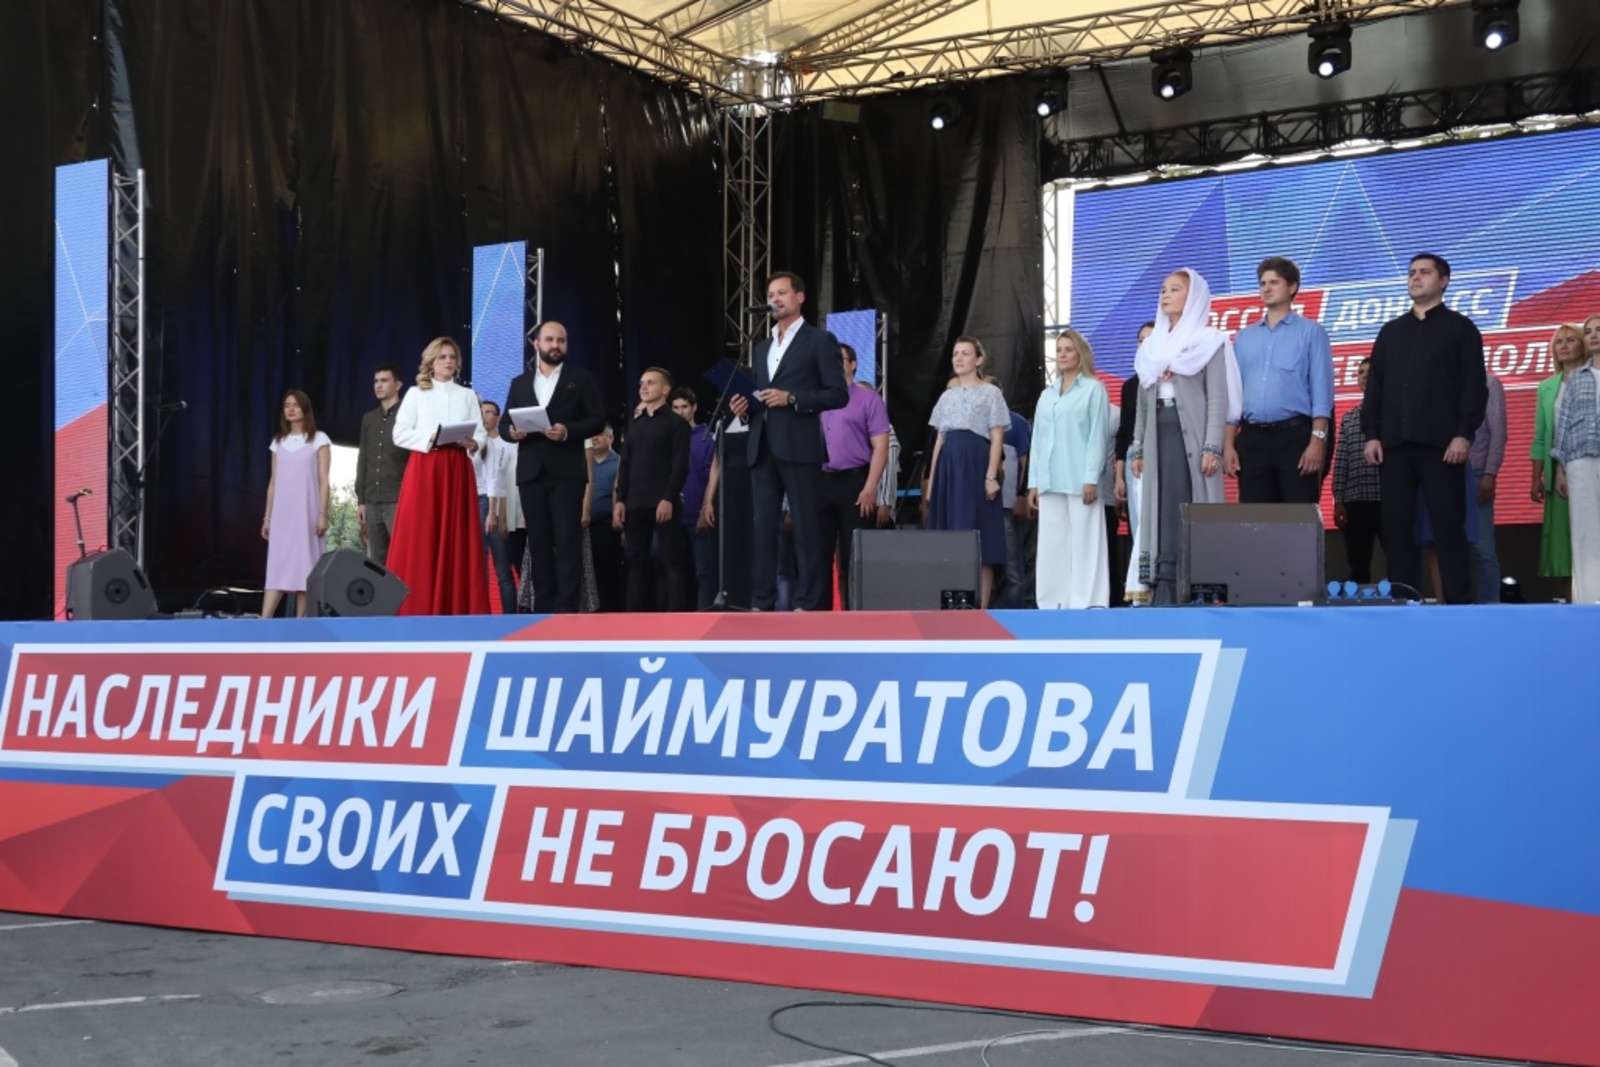 Радий Хабиров: "Мы ждём жителей Донбасса в большую семью народов России!"